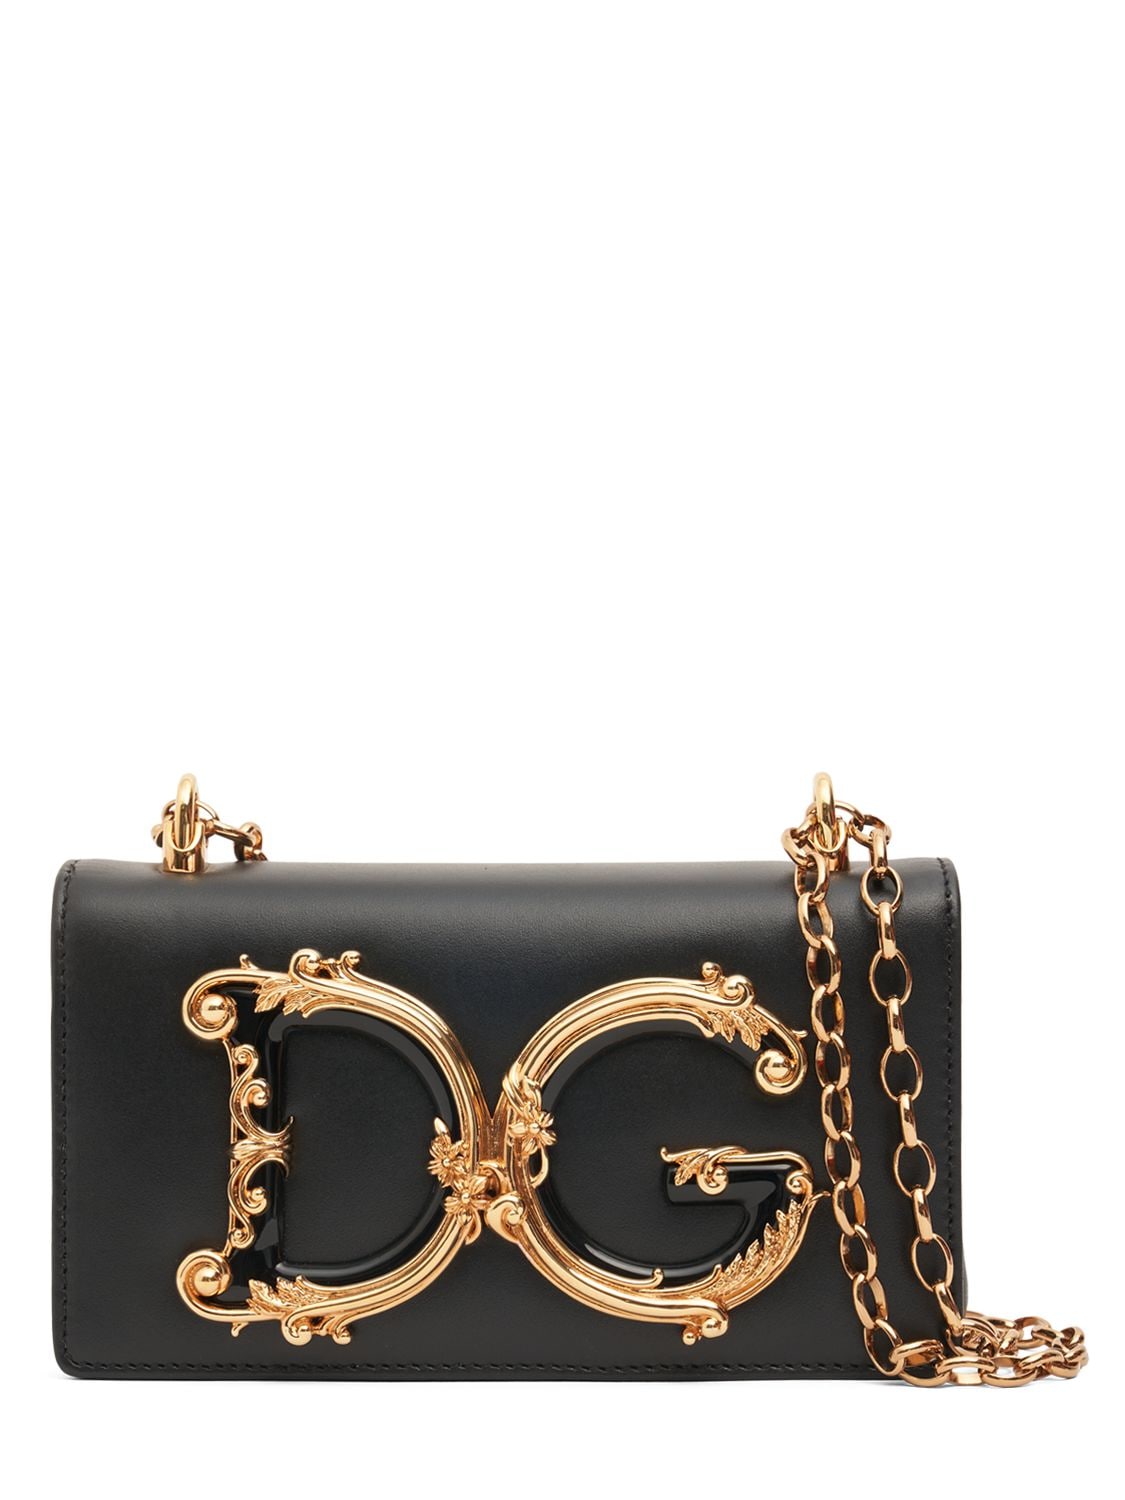 Dolce & Gabbana Mini Dg Girls Leather Shoulder Bag In Black